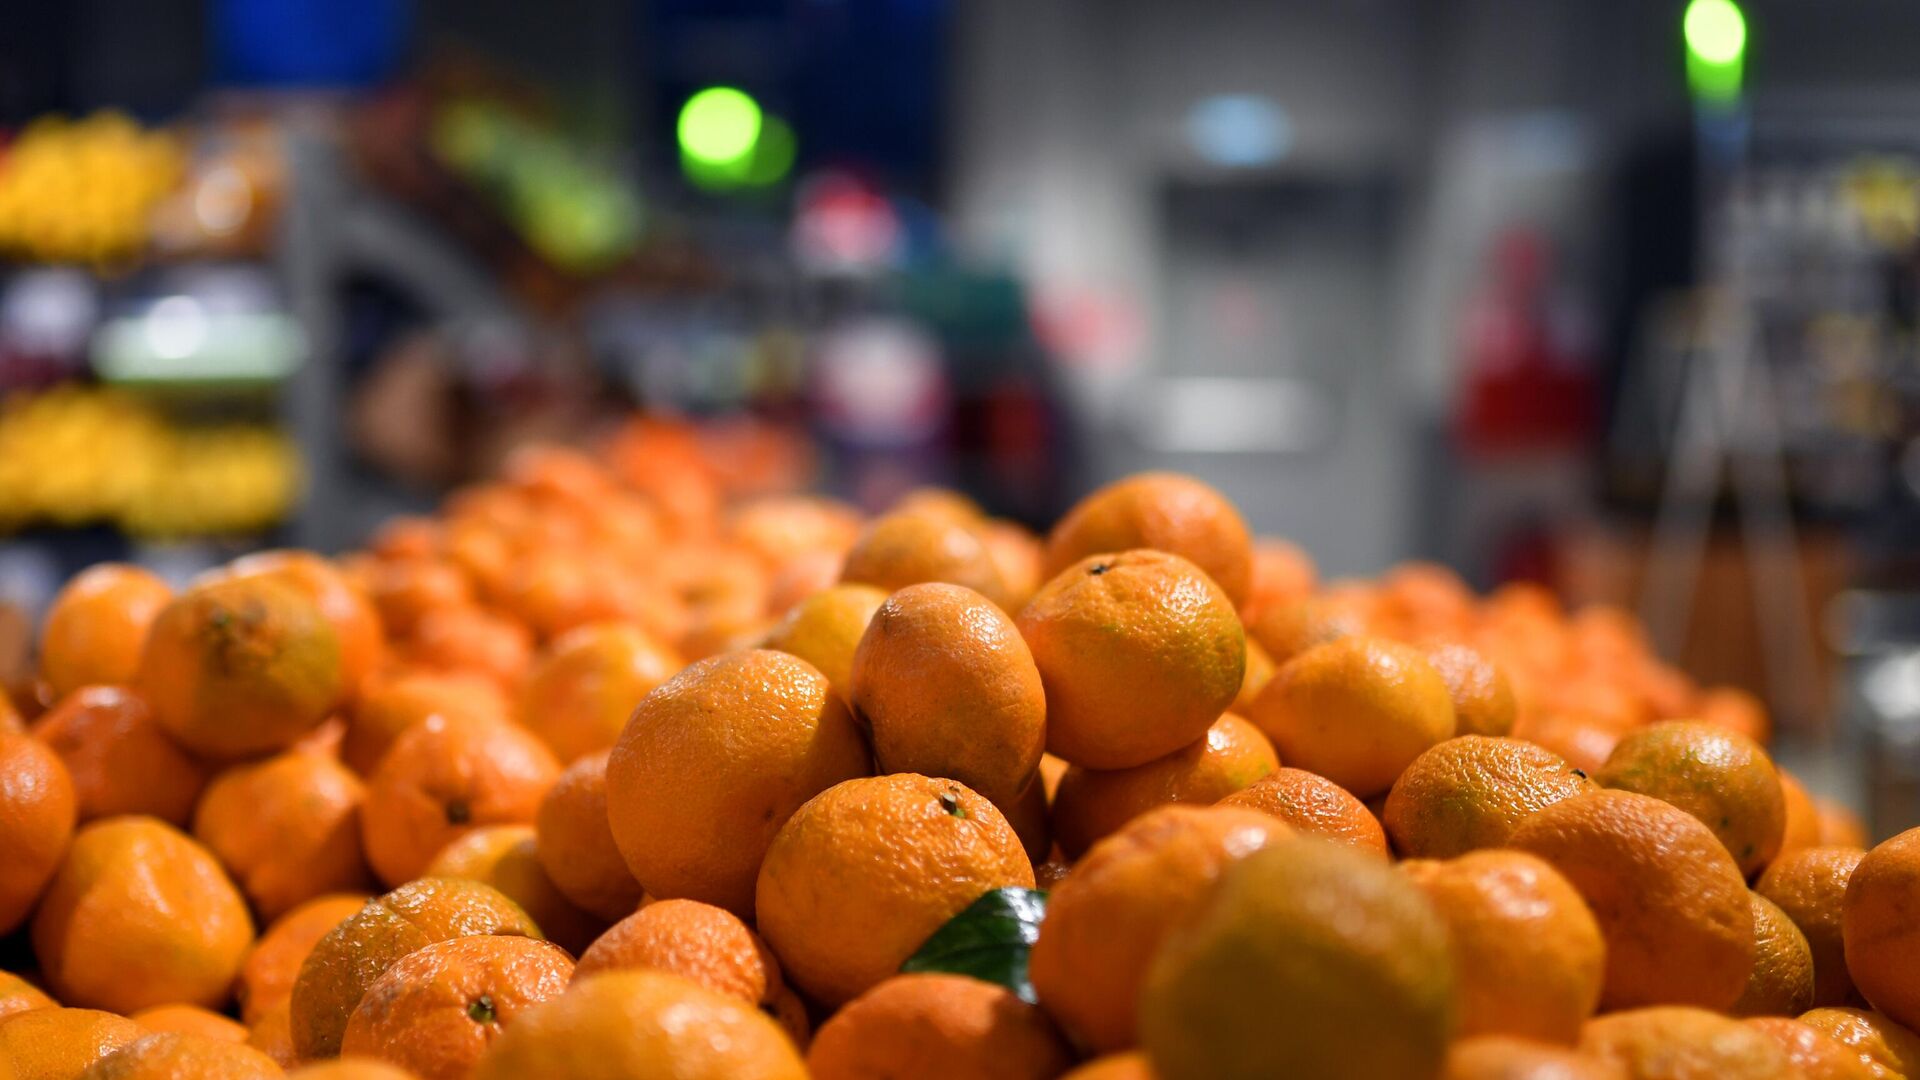 Эксперты заявили, что пакистанские мандарины обрушили цены на рынке Узбекистана